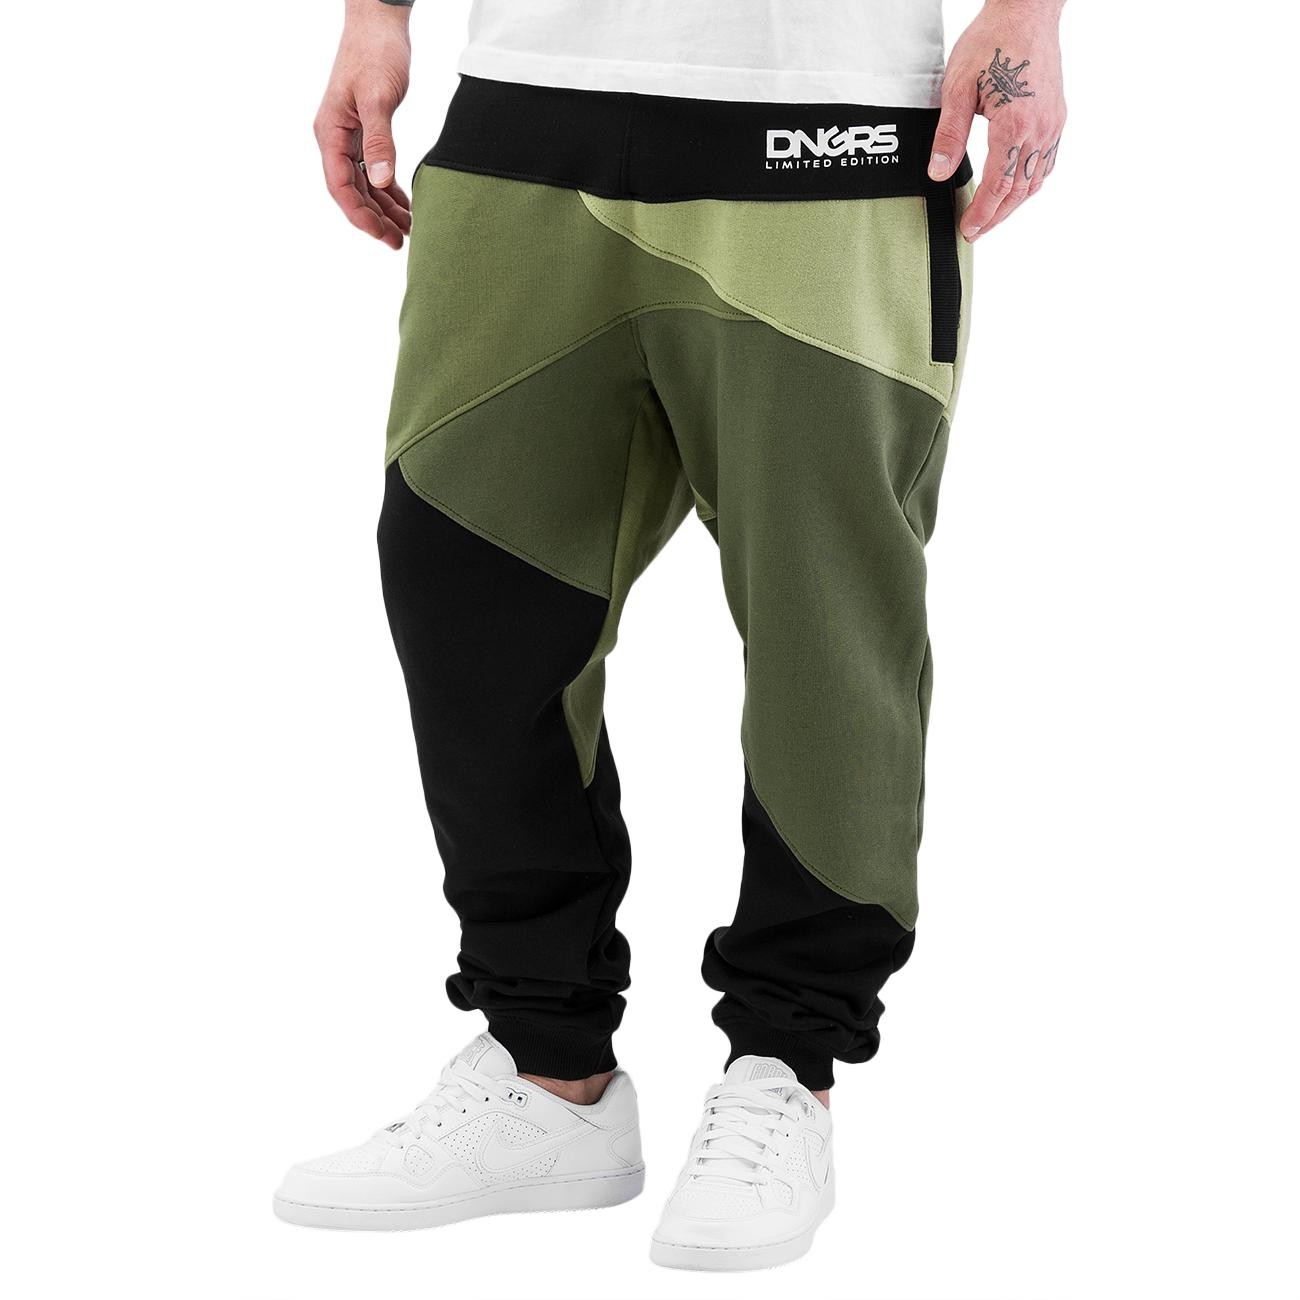 Dangerous DNGRS kalhoty pánské Locotay Sweatpants Olive/Black tepláky XL, olivová